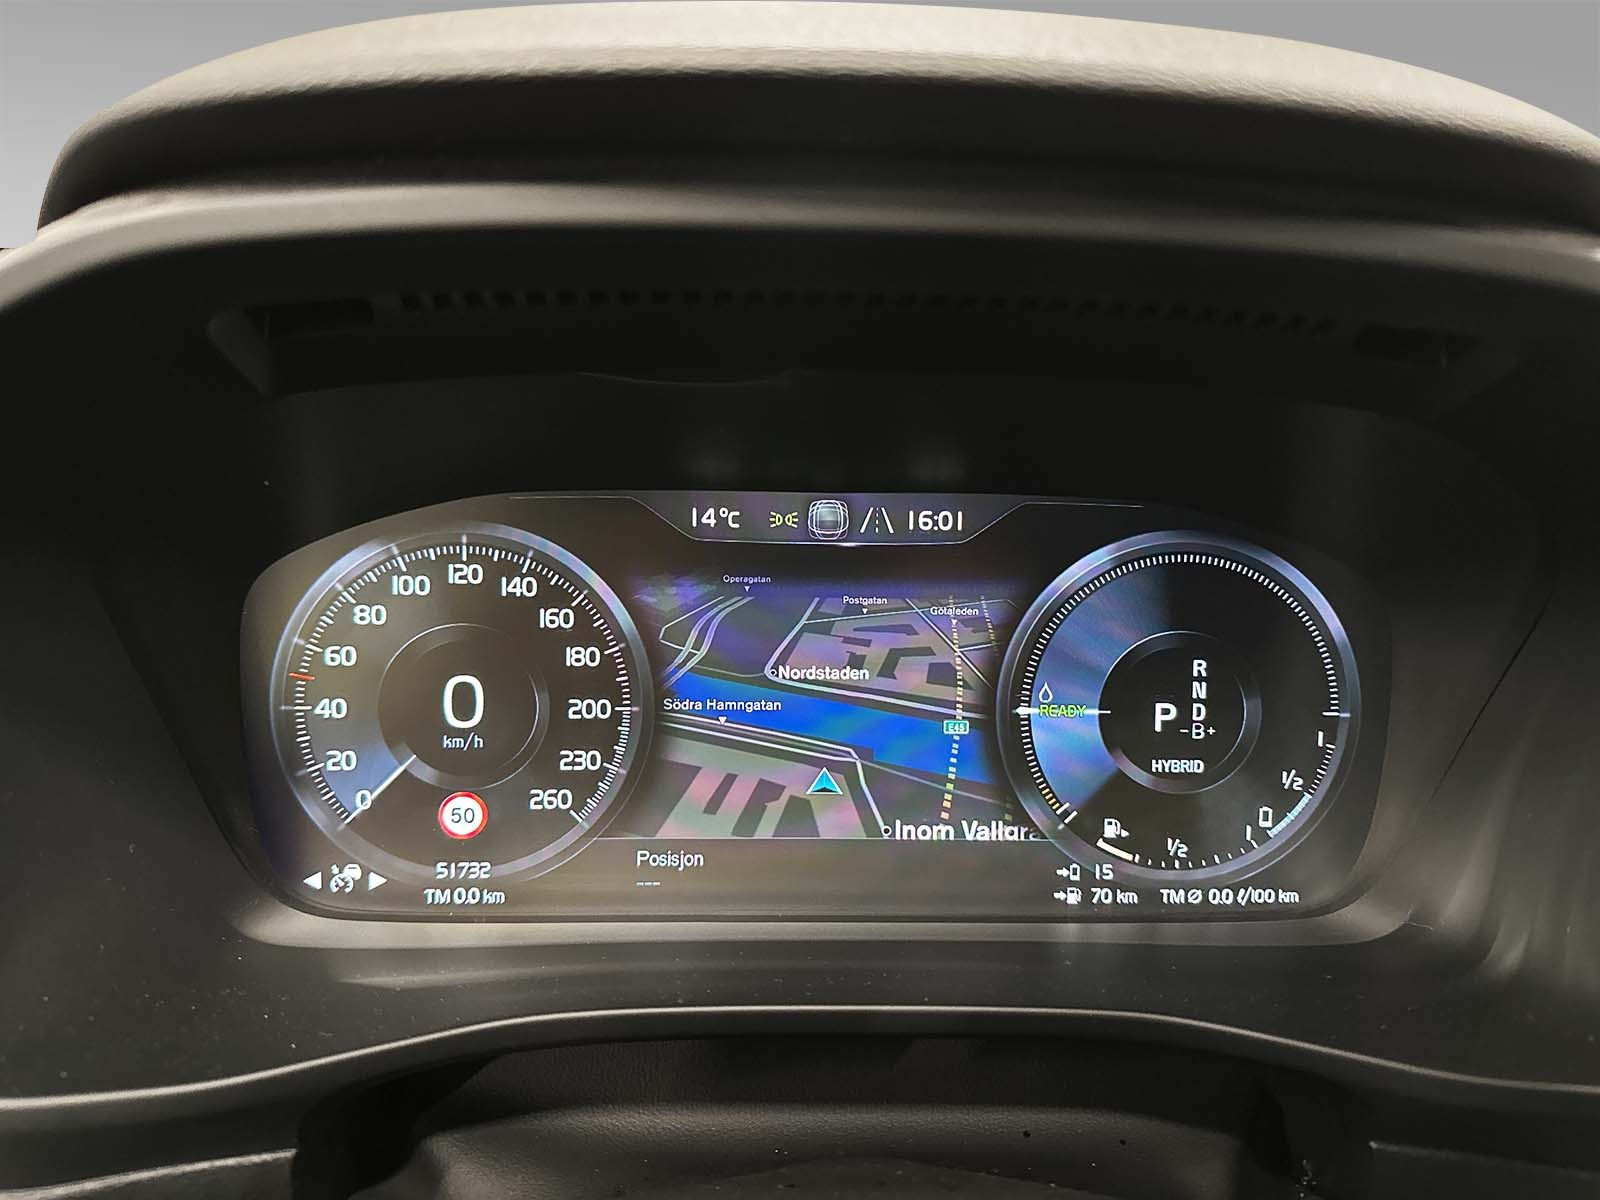 Heldigitalt førerdisplay som viser navigasjon og siste avleste hastighets skilt